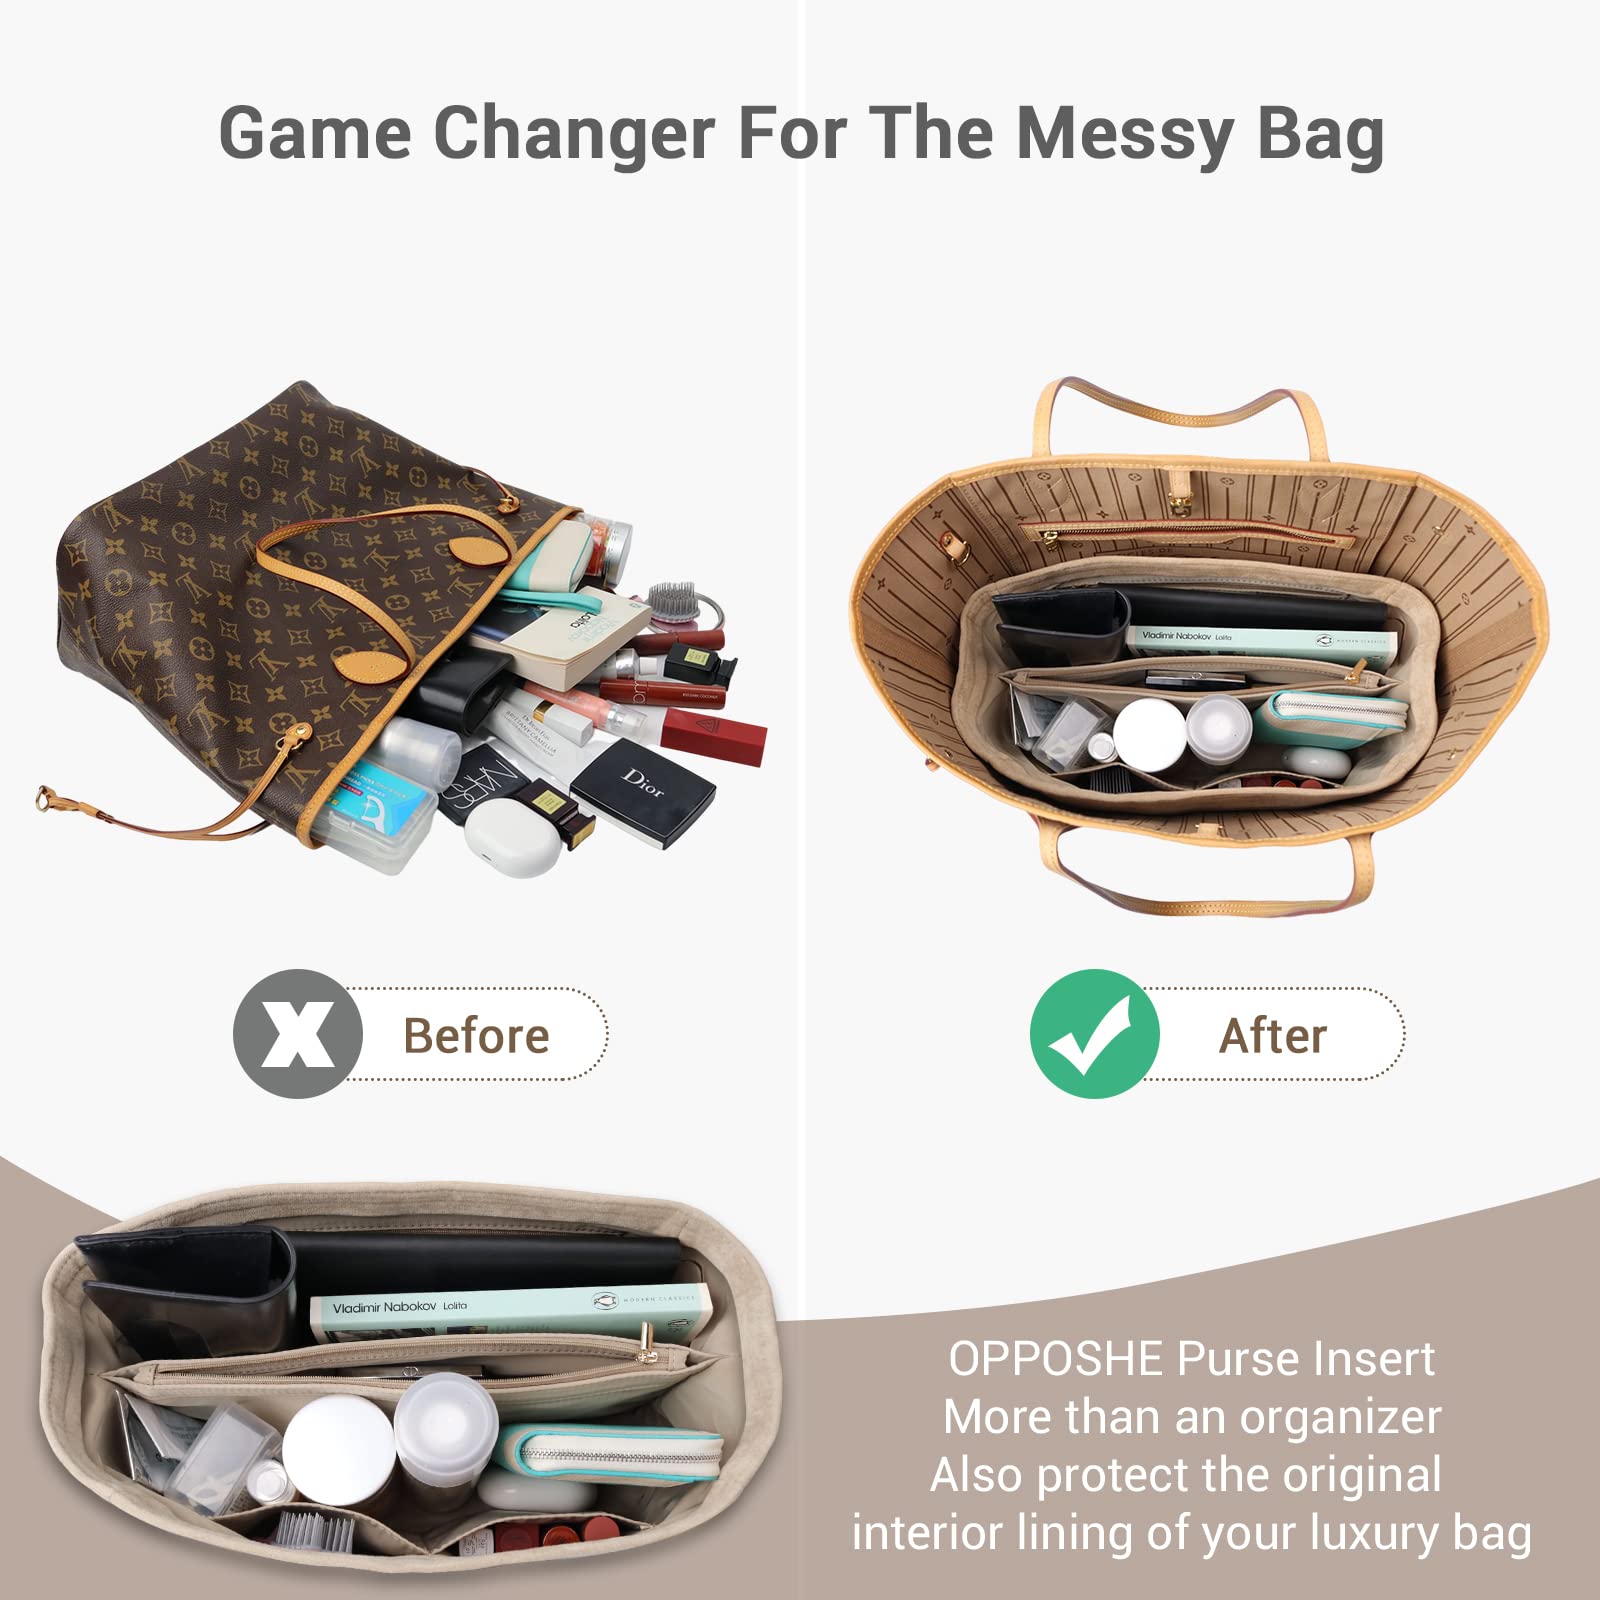 OPPOSHE Purse Organizer Insert for Handbags, Softened Felt Bag Insert  Organizer for Tote, Handbag Or…See more OPPOSHE Purse Organizer Insert for